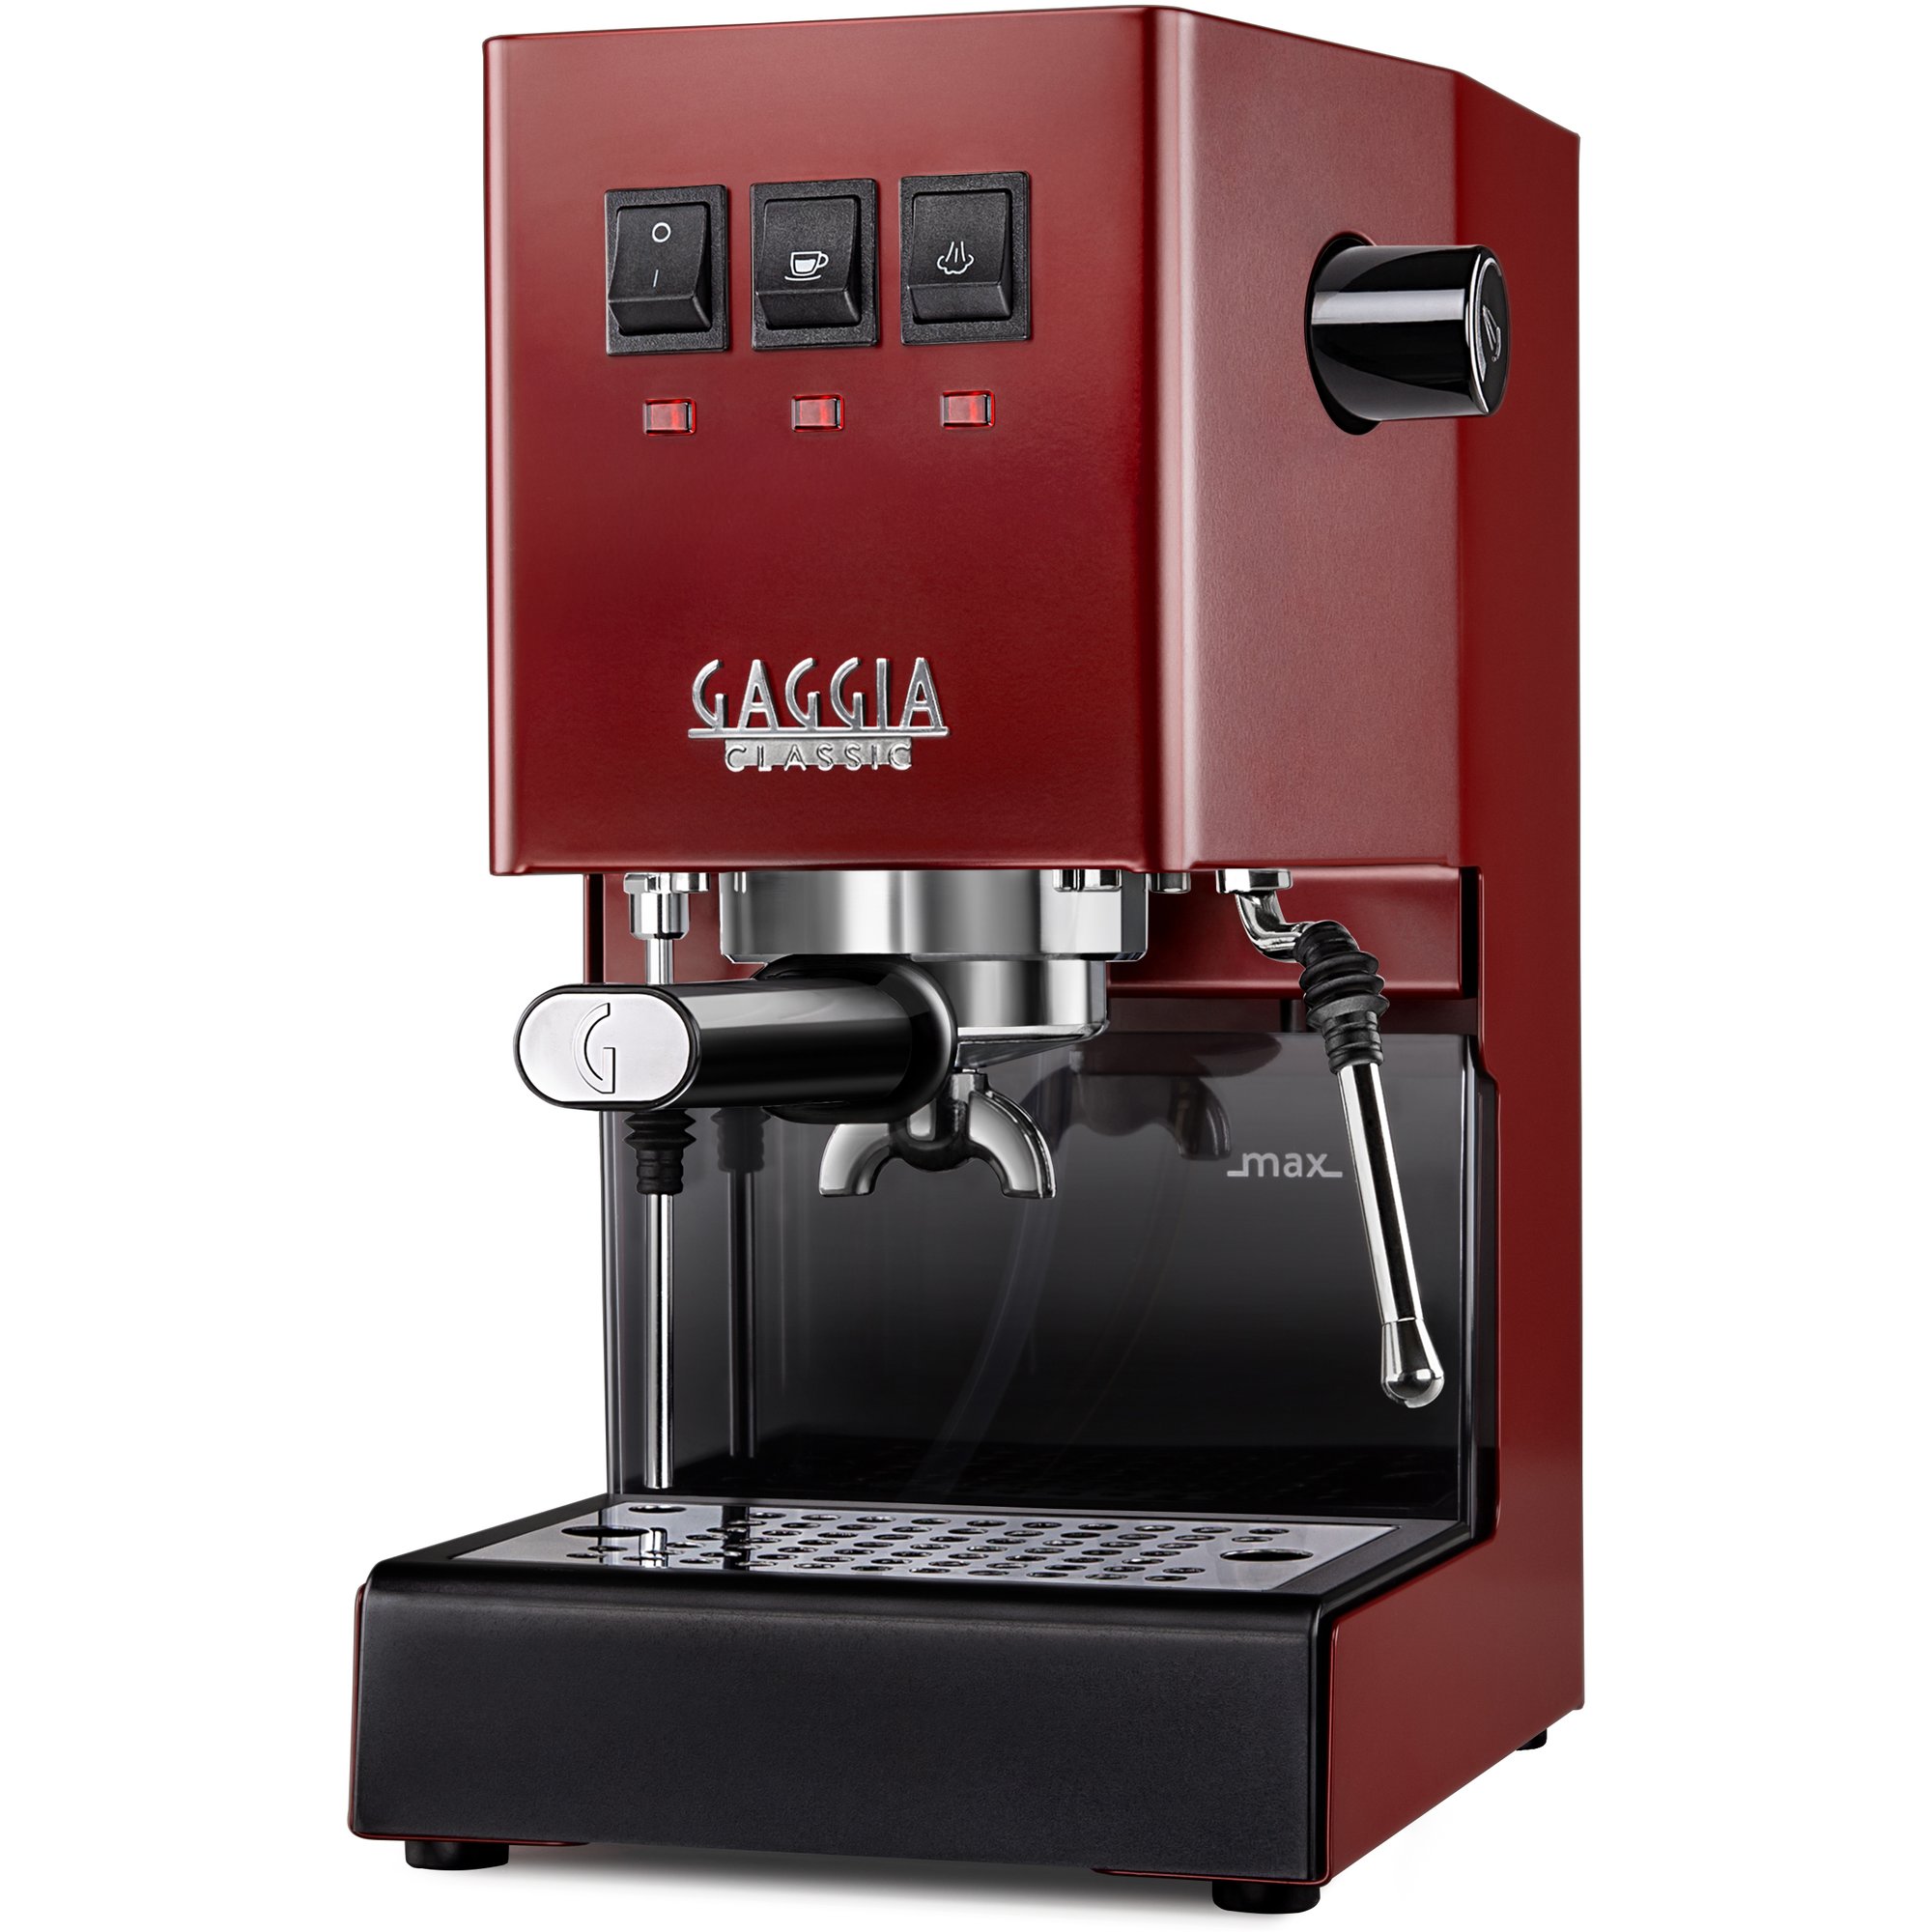 Gaggia Classic Evo Pro espressomaskine, rød